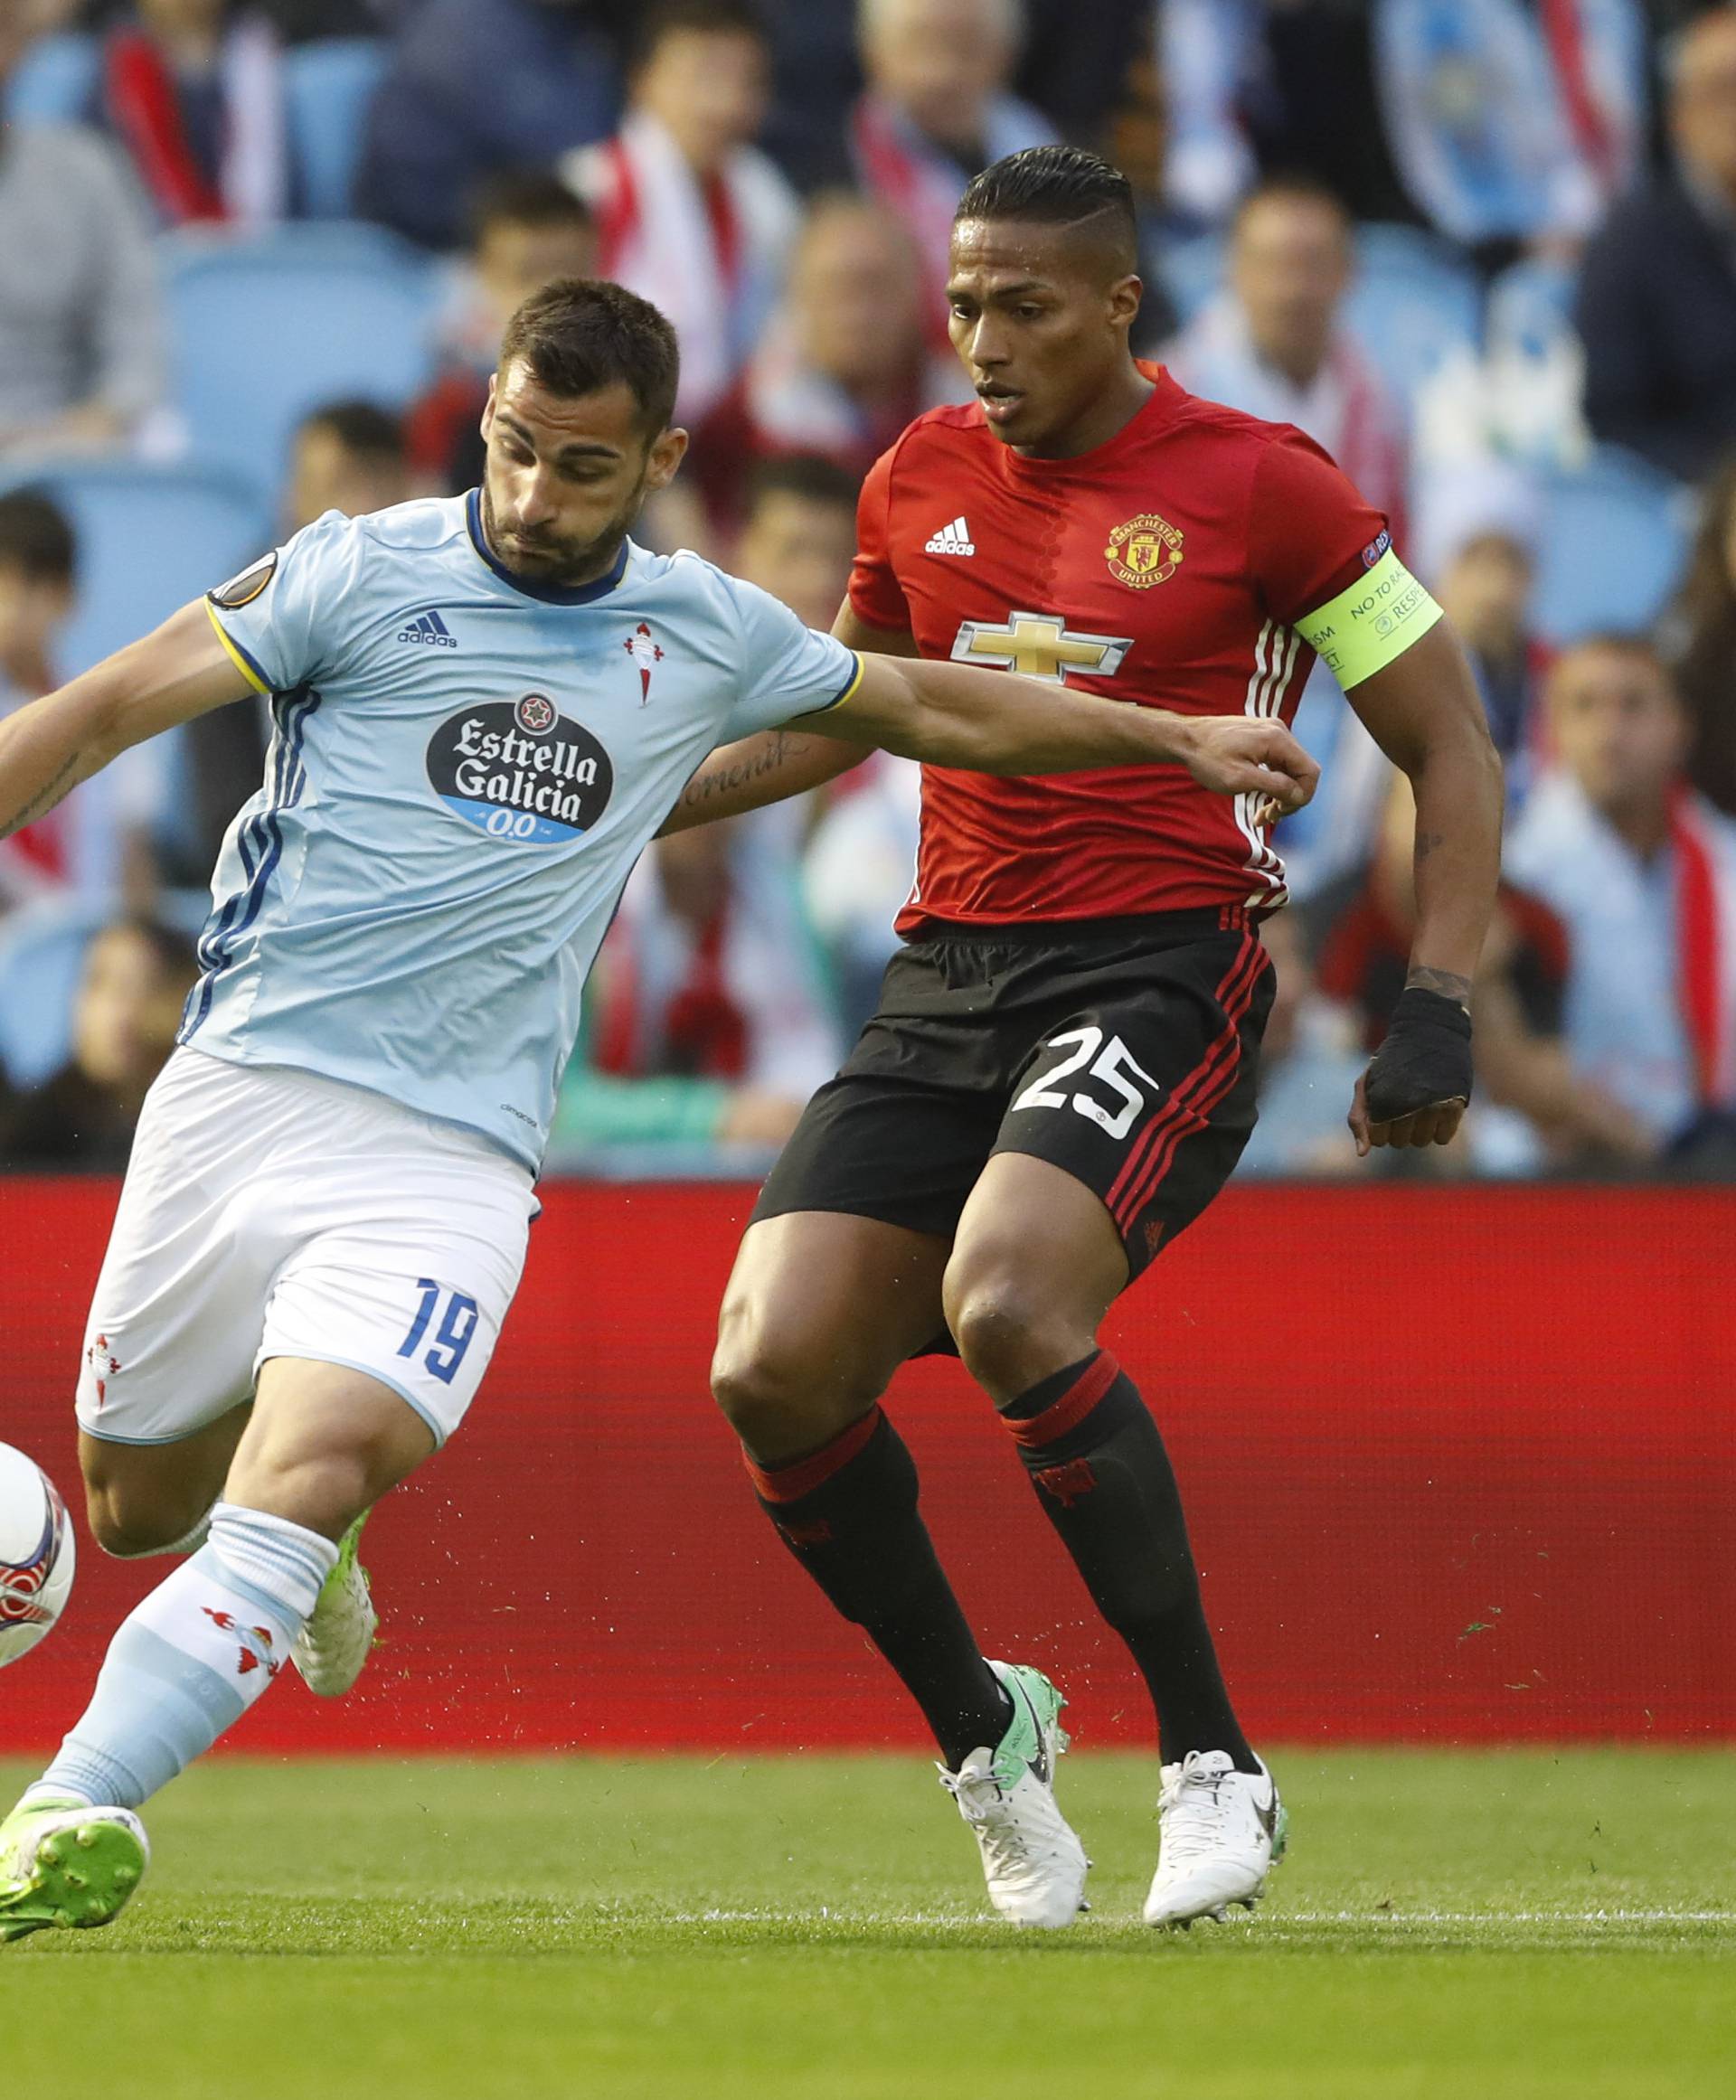 Celta Vigo's Jonathan Castro Otto in action with Manchester United's Antonio Valencia